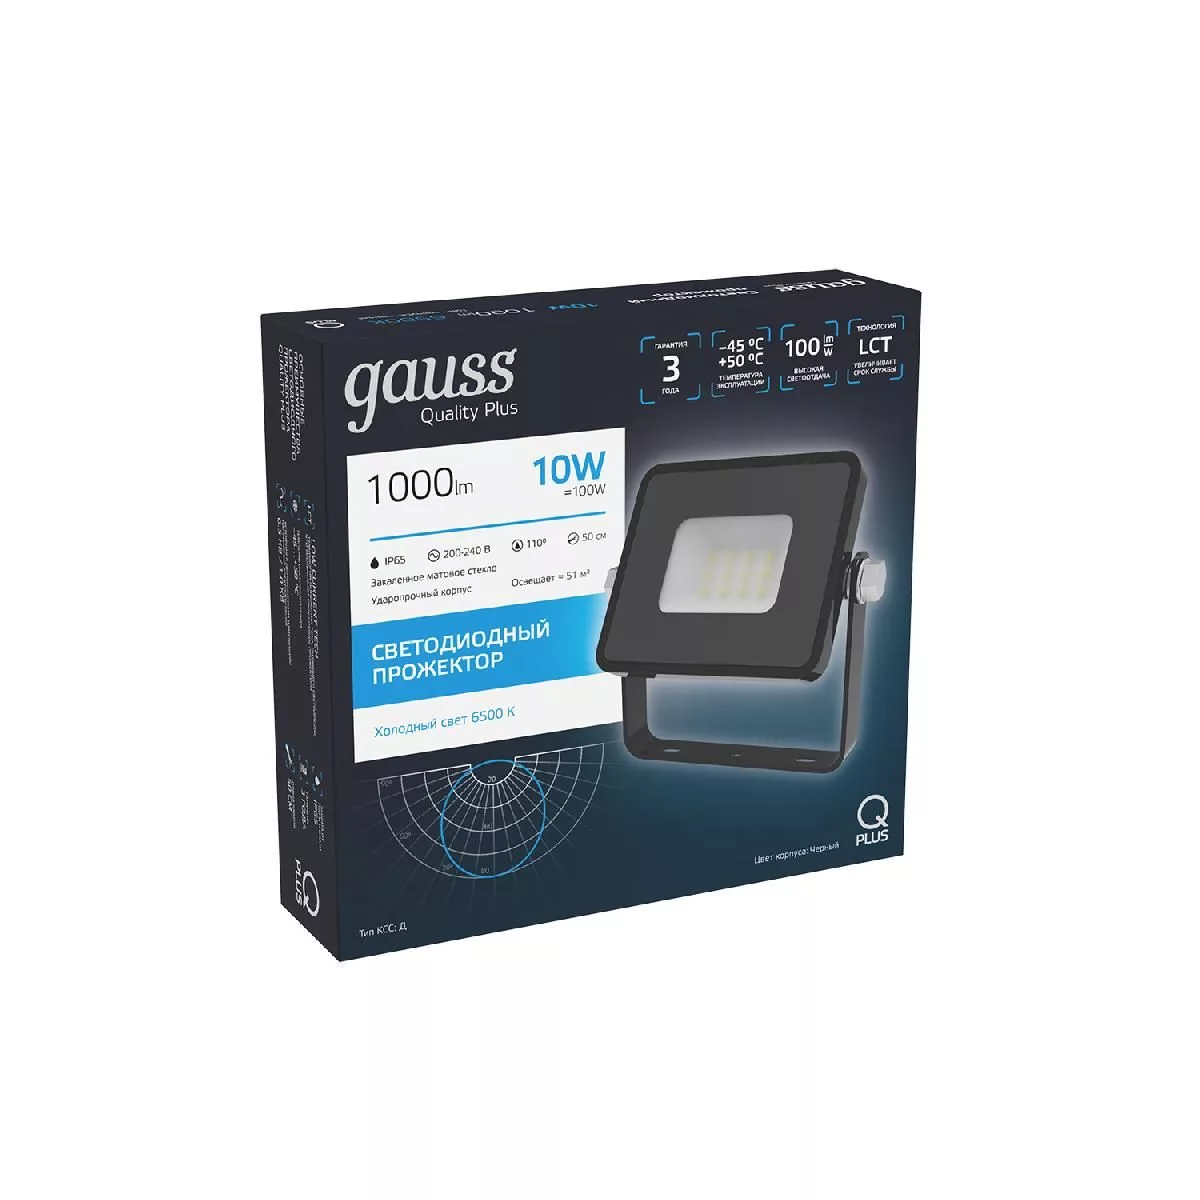 Прожектор Gauss Qplus 10W 1000lm 6500K 200-240V IP65 черный LED 1/20